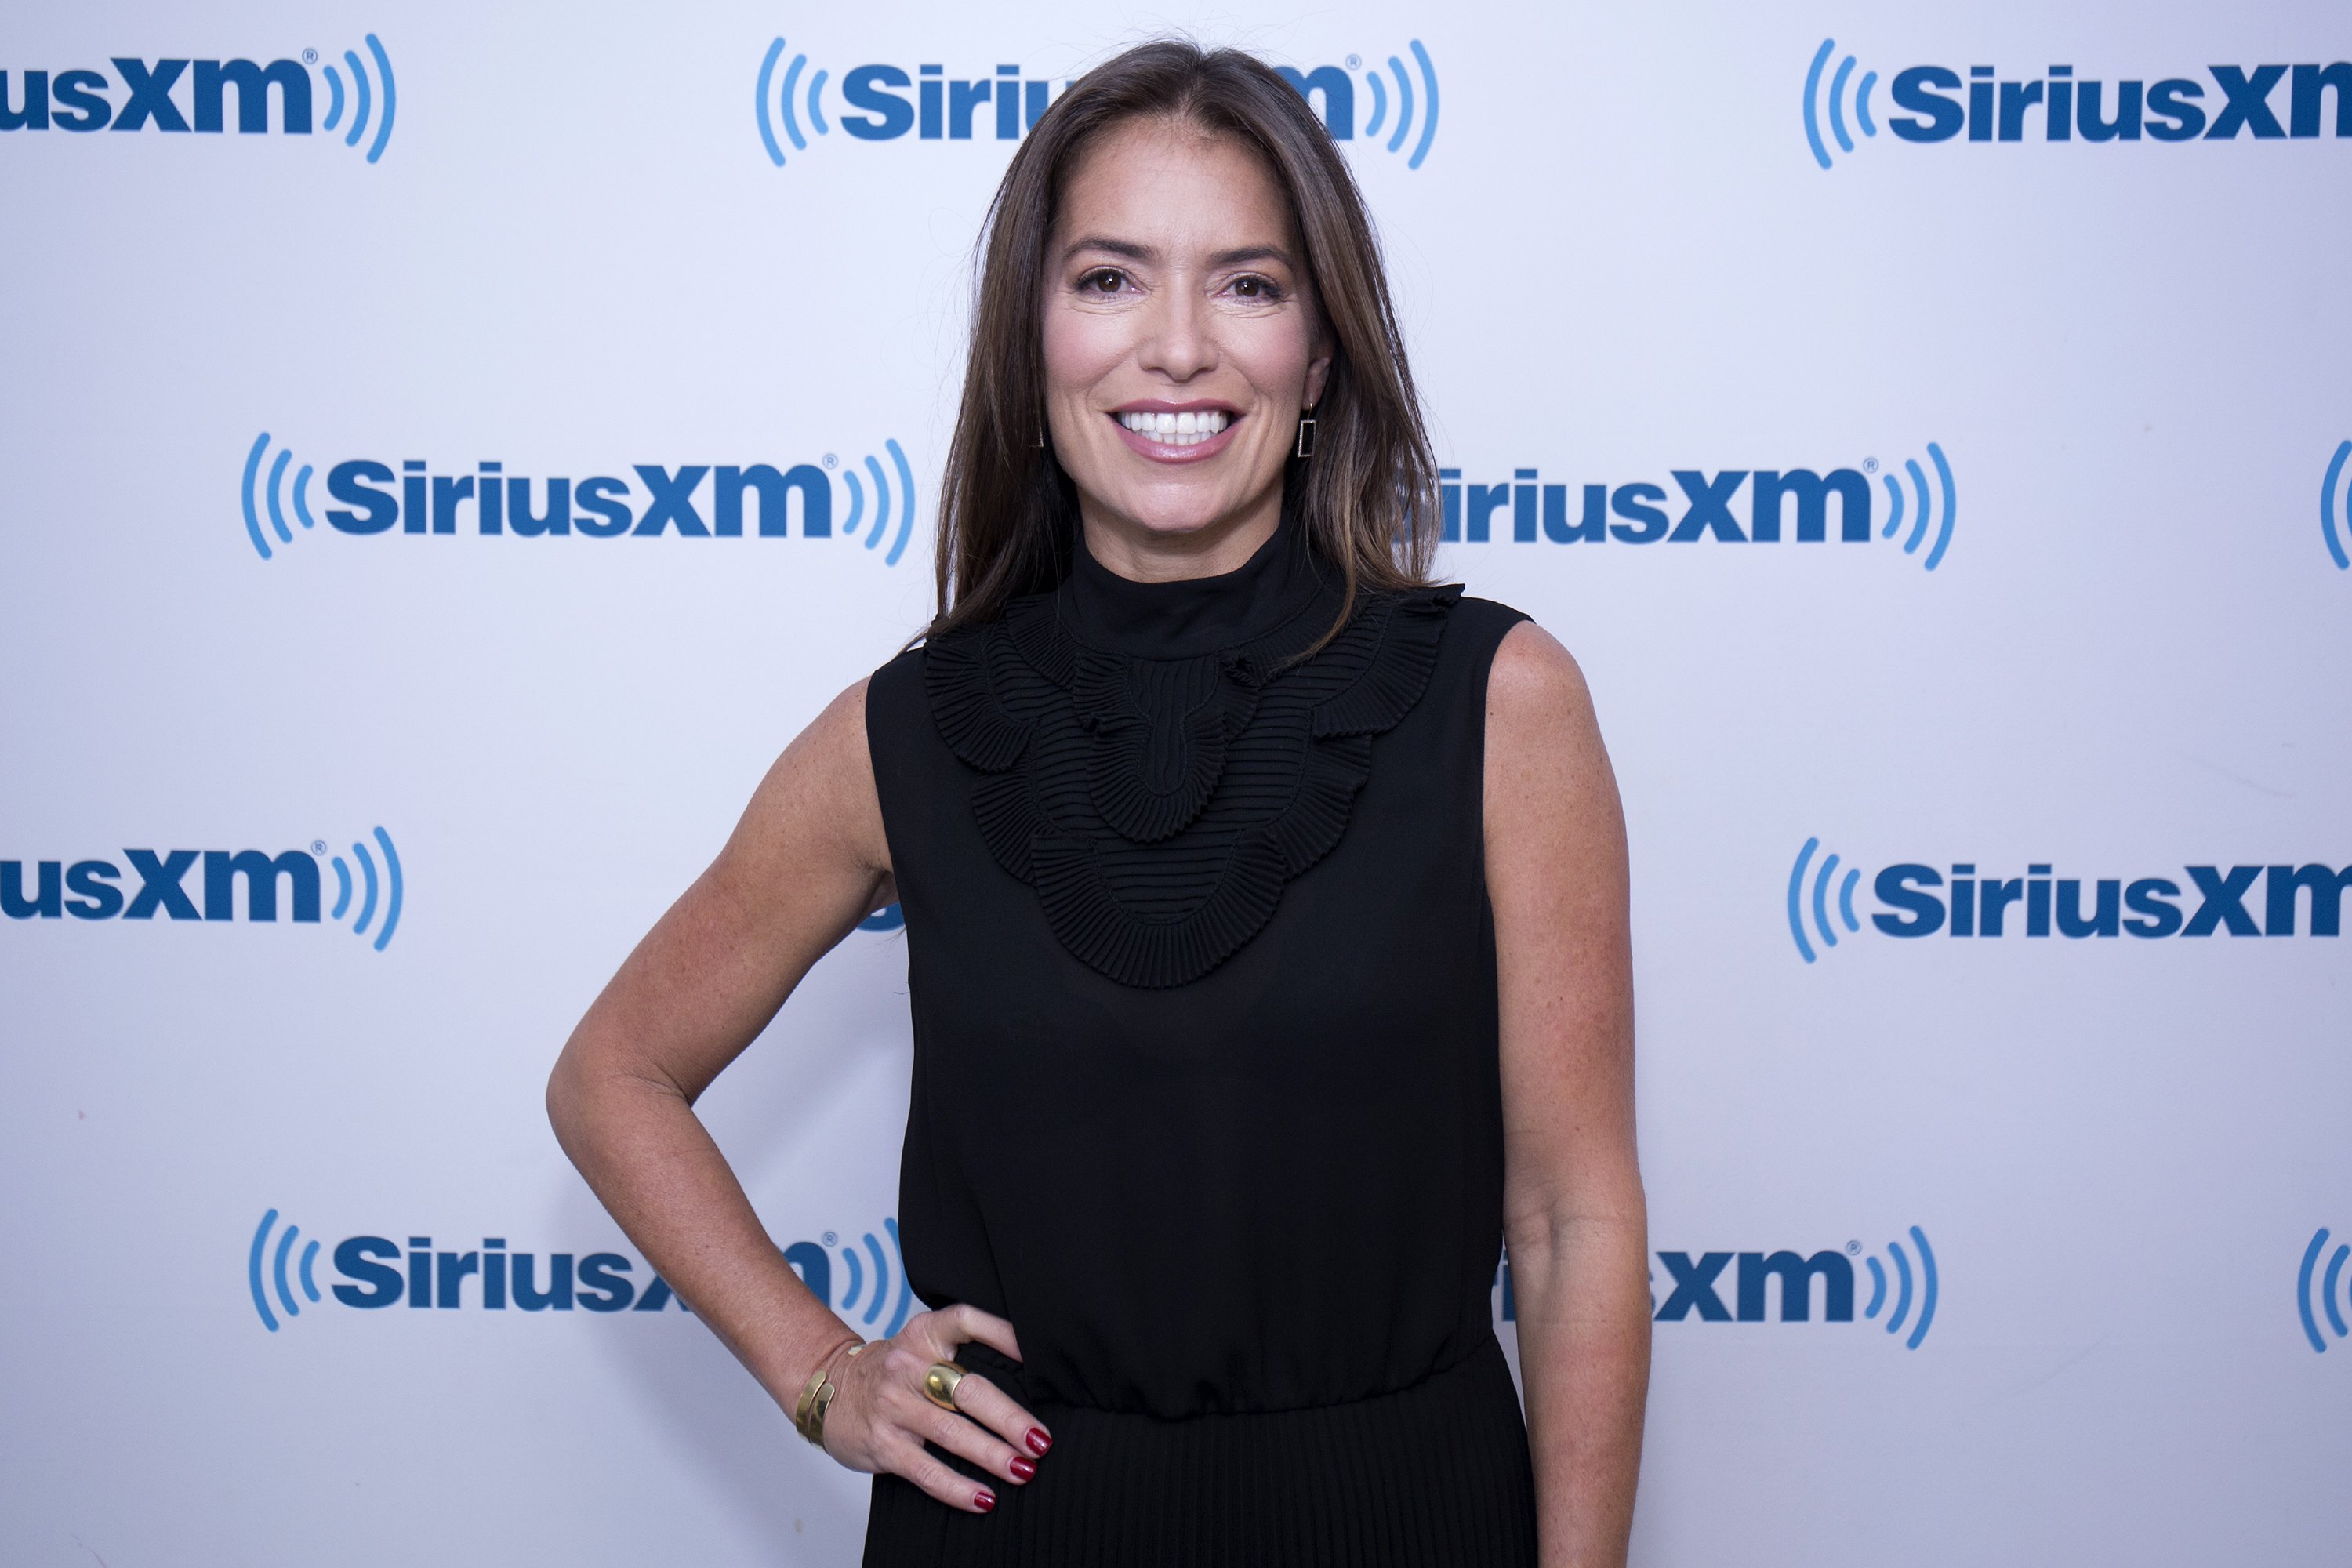 Laura Wasser en los estudios SiriusXM, el 25 de enero de 2018 en la ciudad de Nueva York. | Foto: Getty Images